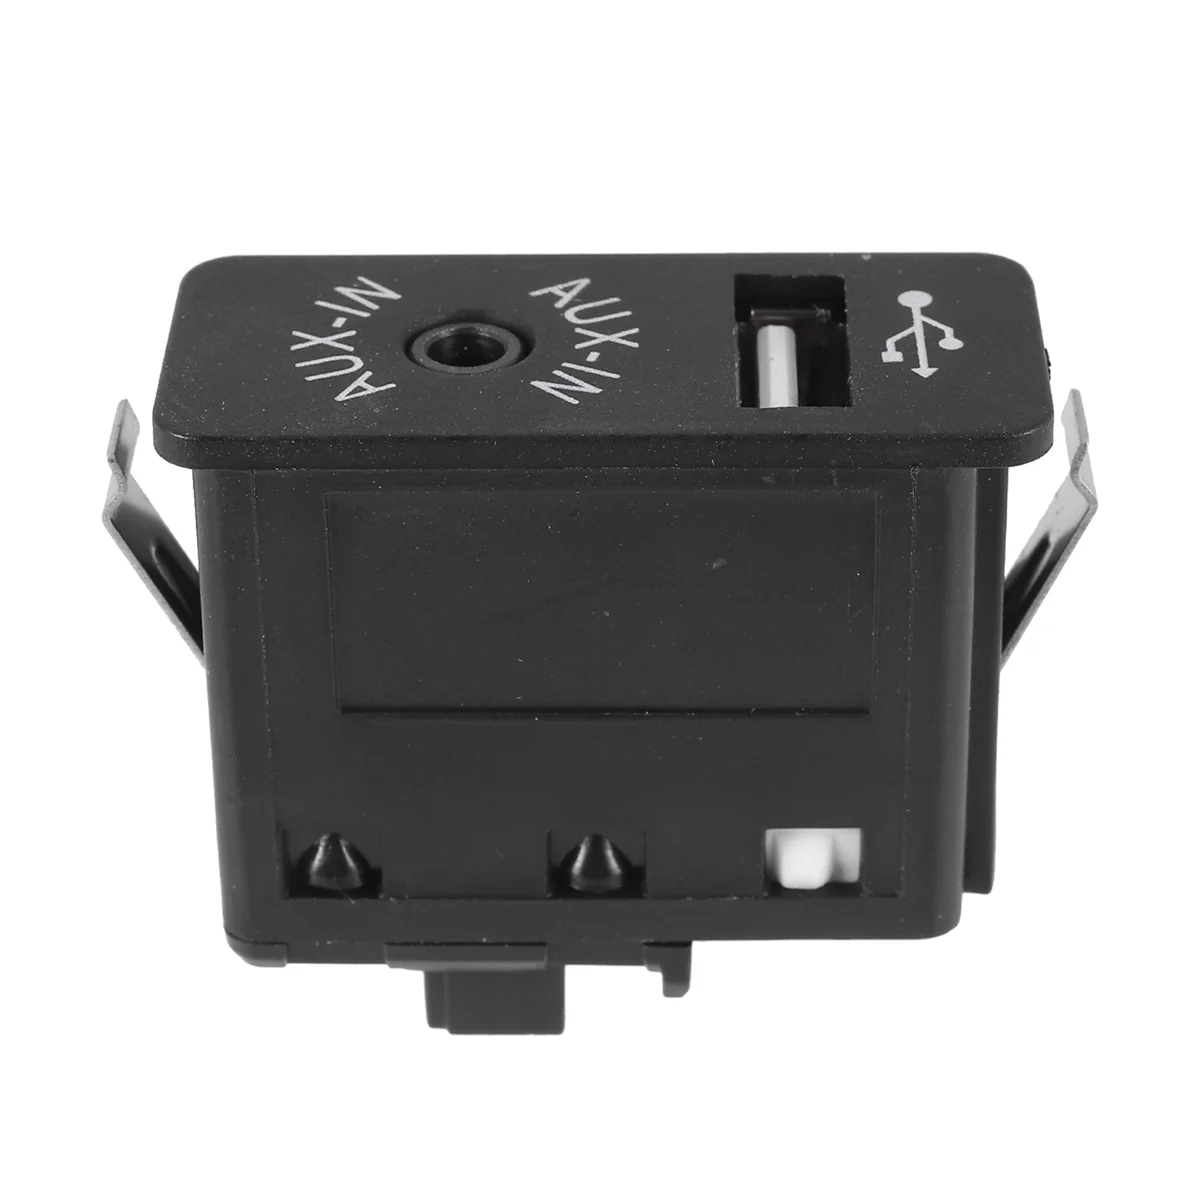 Car USB AUX In Plug Auxiliary Input Socket Adapter for E81 E87 E90 F10 F12 E70 X4 X5 X6